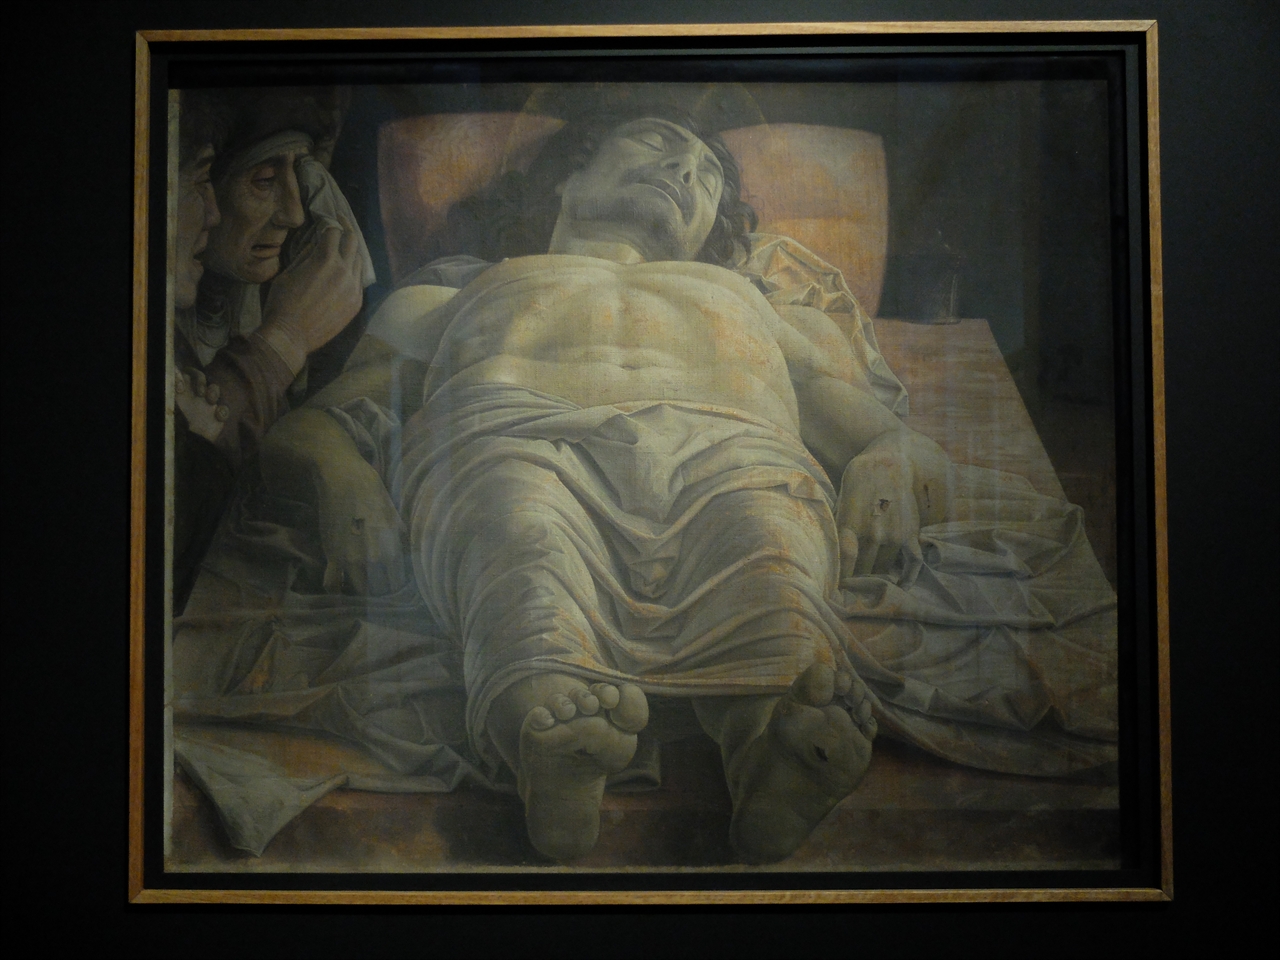 안드레아 만테냐, '죽은 그리스도', 밀라노 브레라 미술관. 조반니 벨리니의 매부이기도 한 만테냐는 이전까지 한 번도 보지 못했던 과감한 구도로 예수의 죽음을 묘사했습니다. 